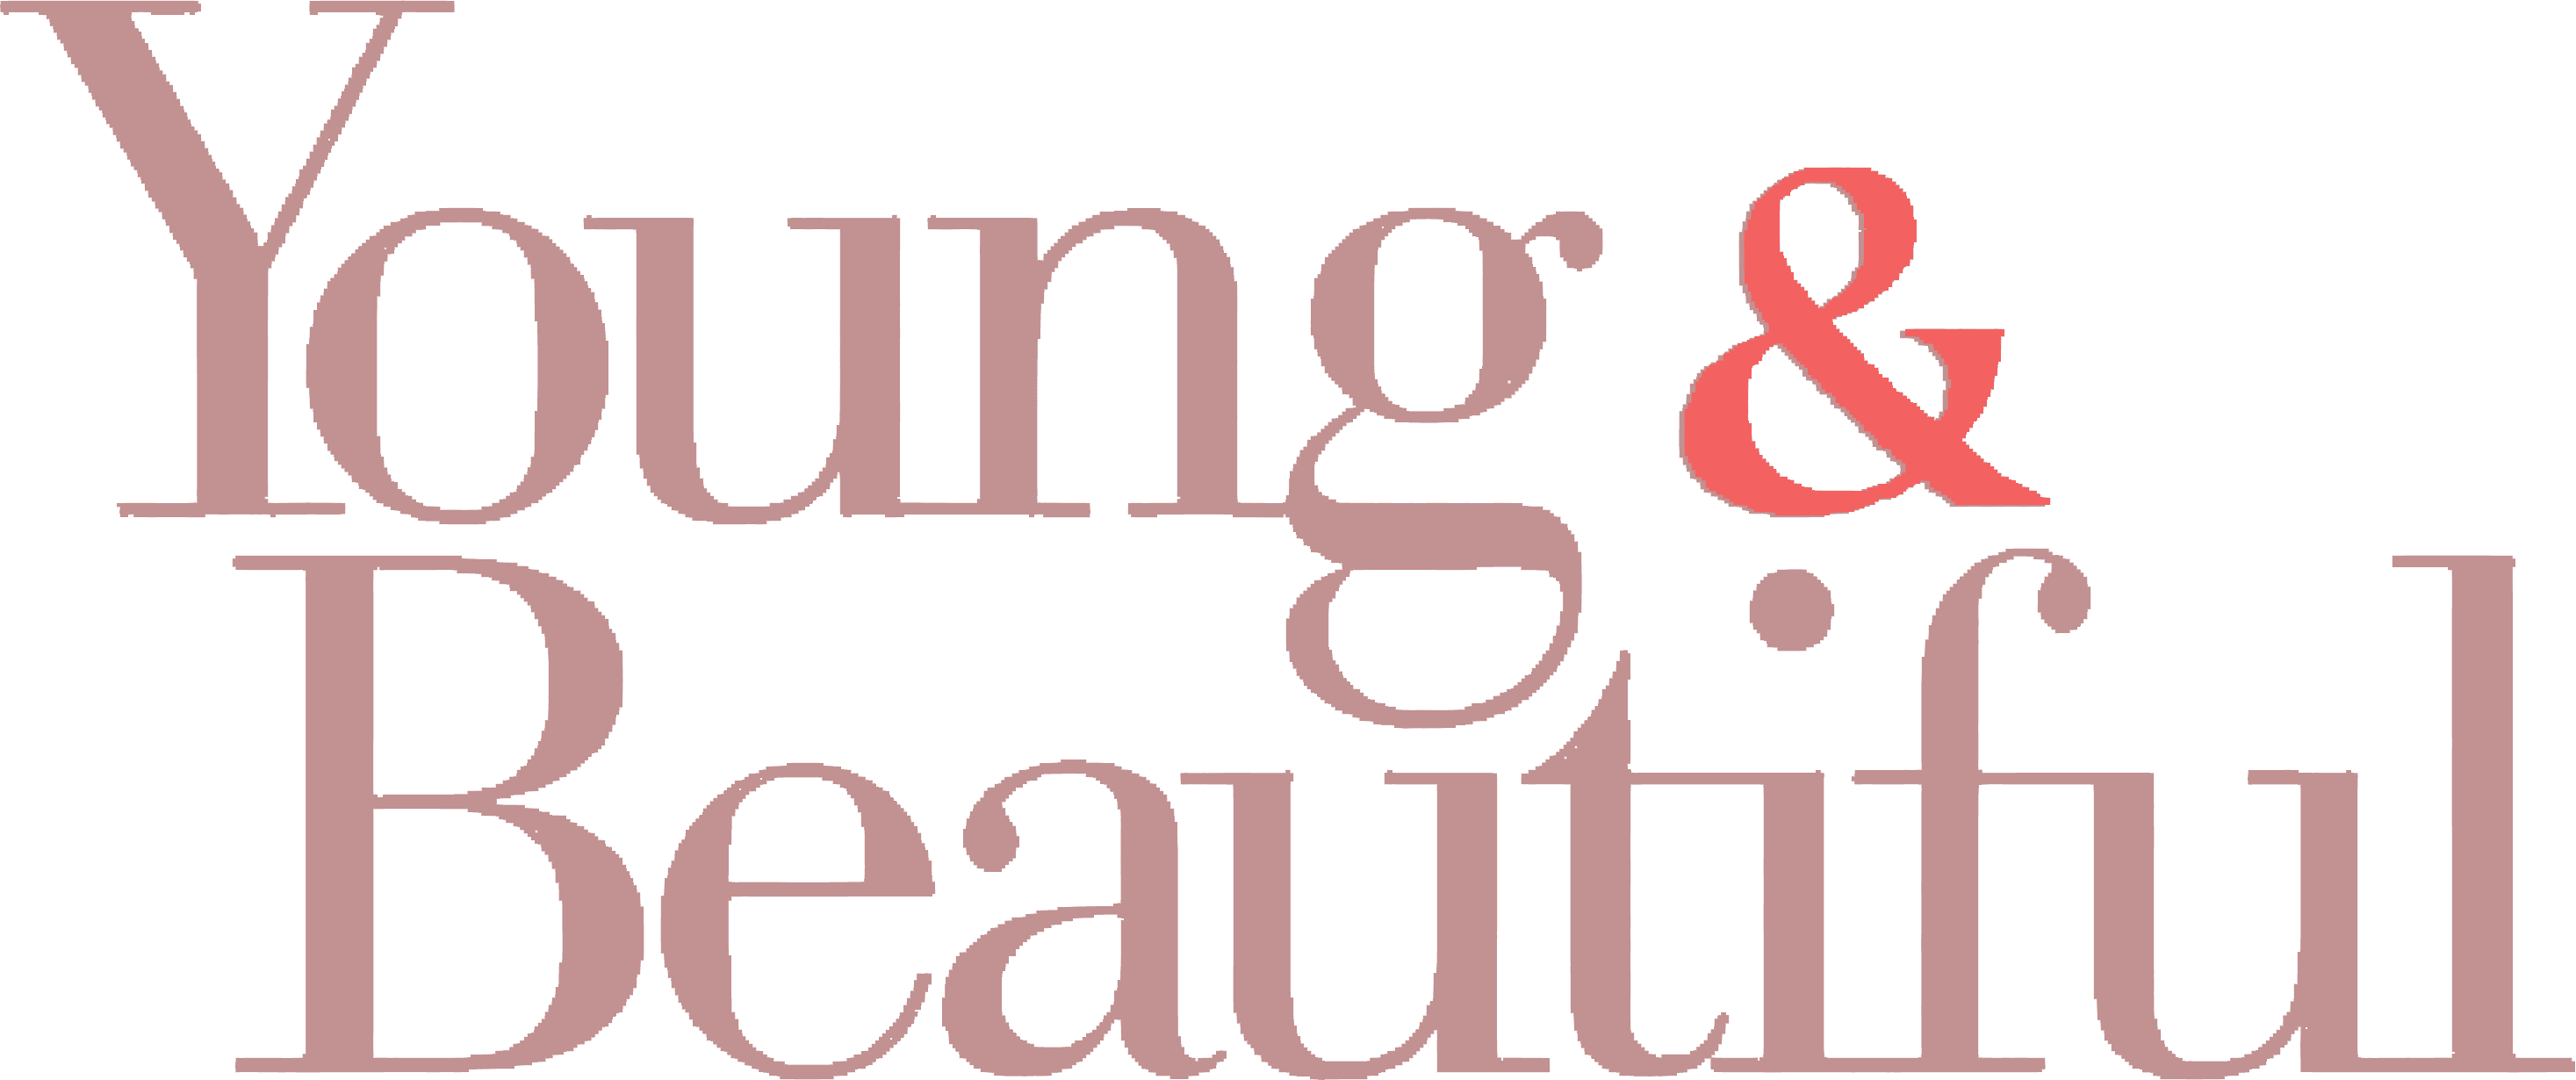 Young & Beautiful logo